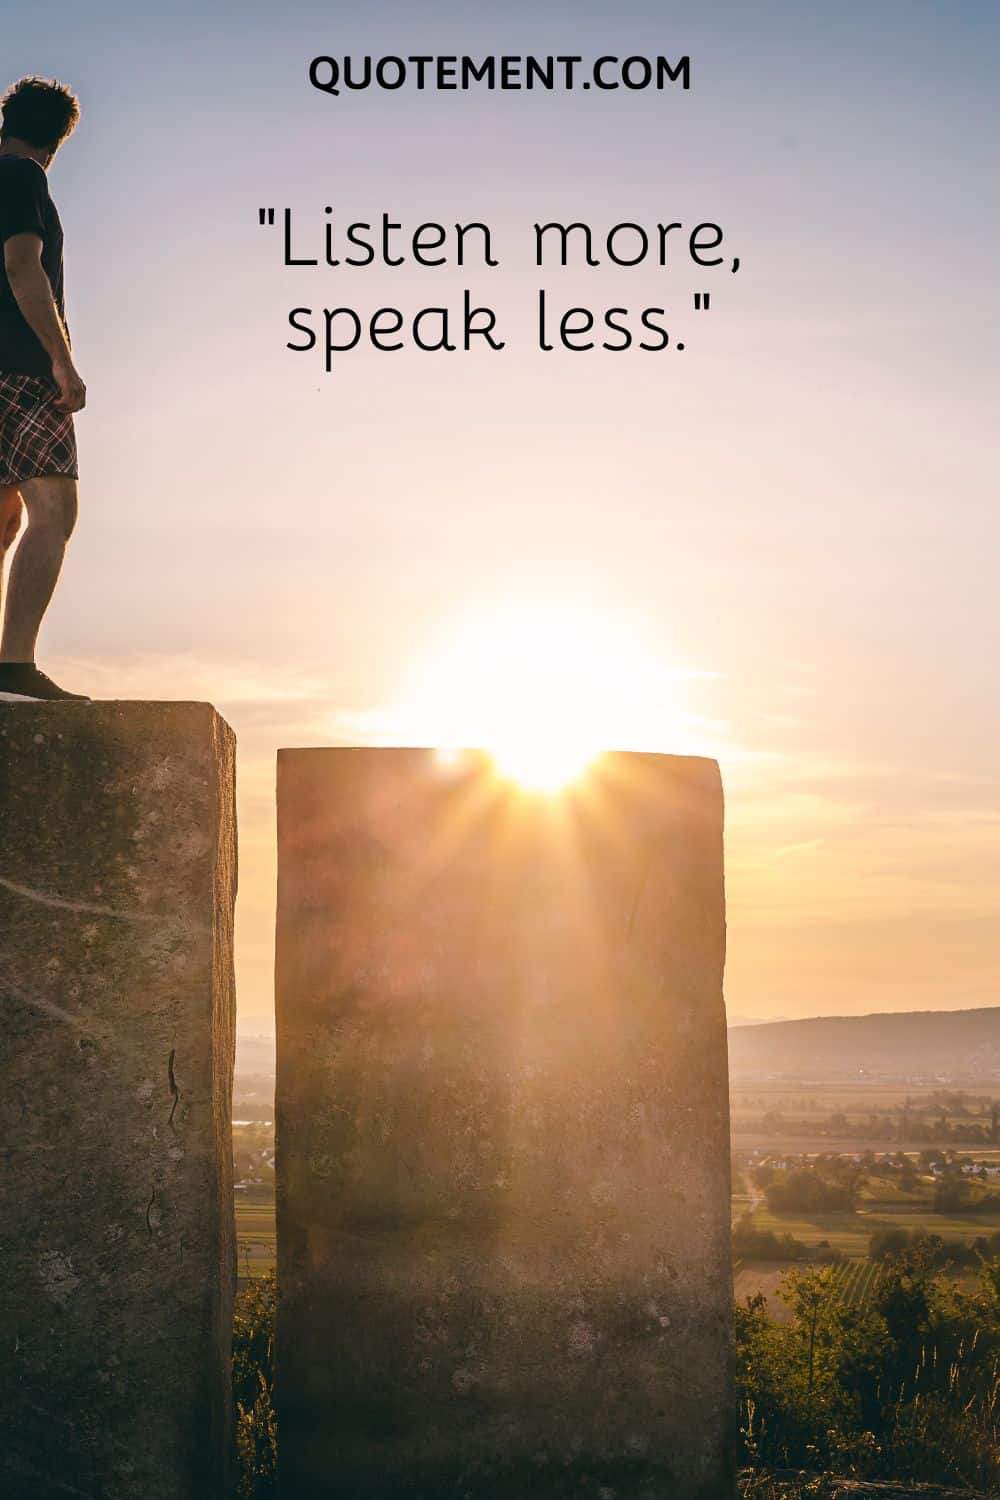 Listen more, speak less